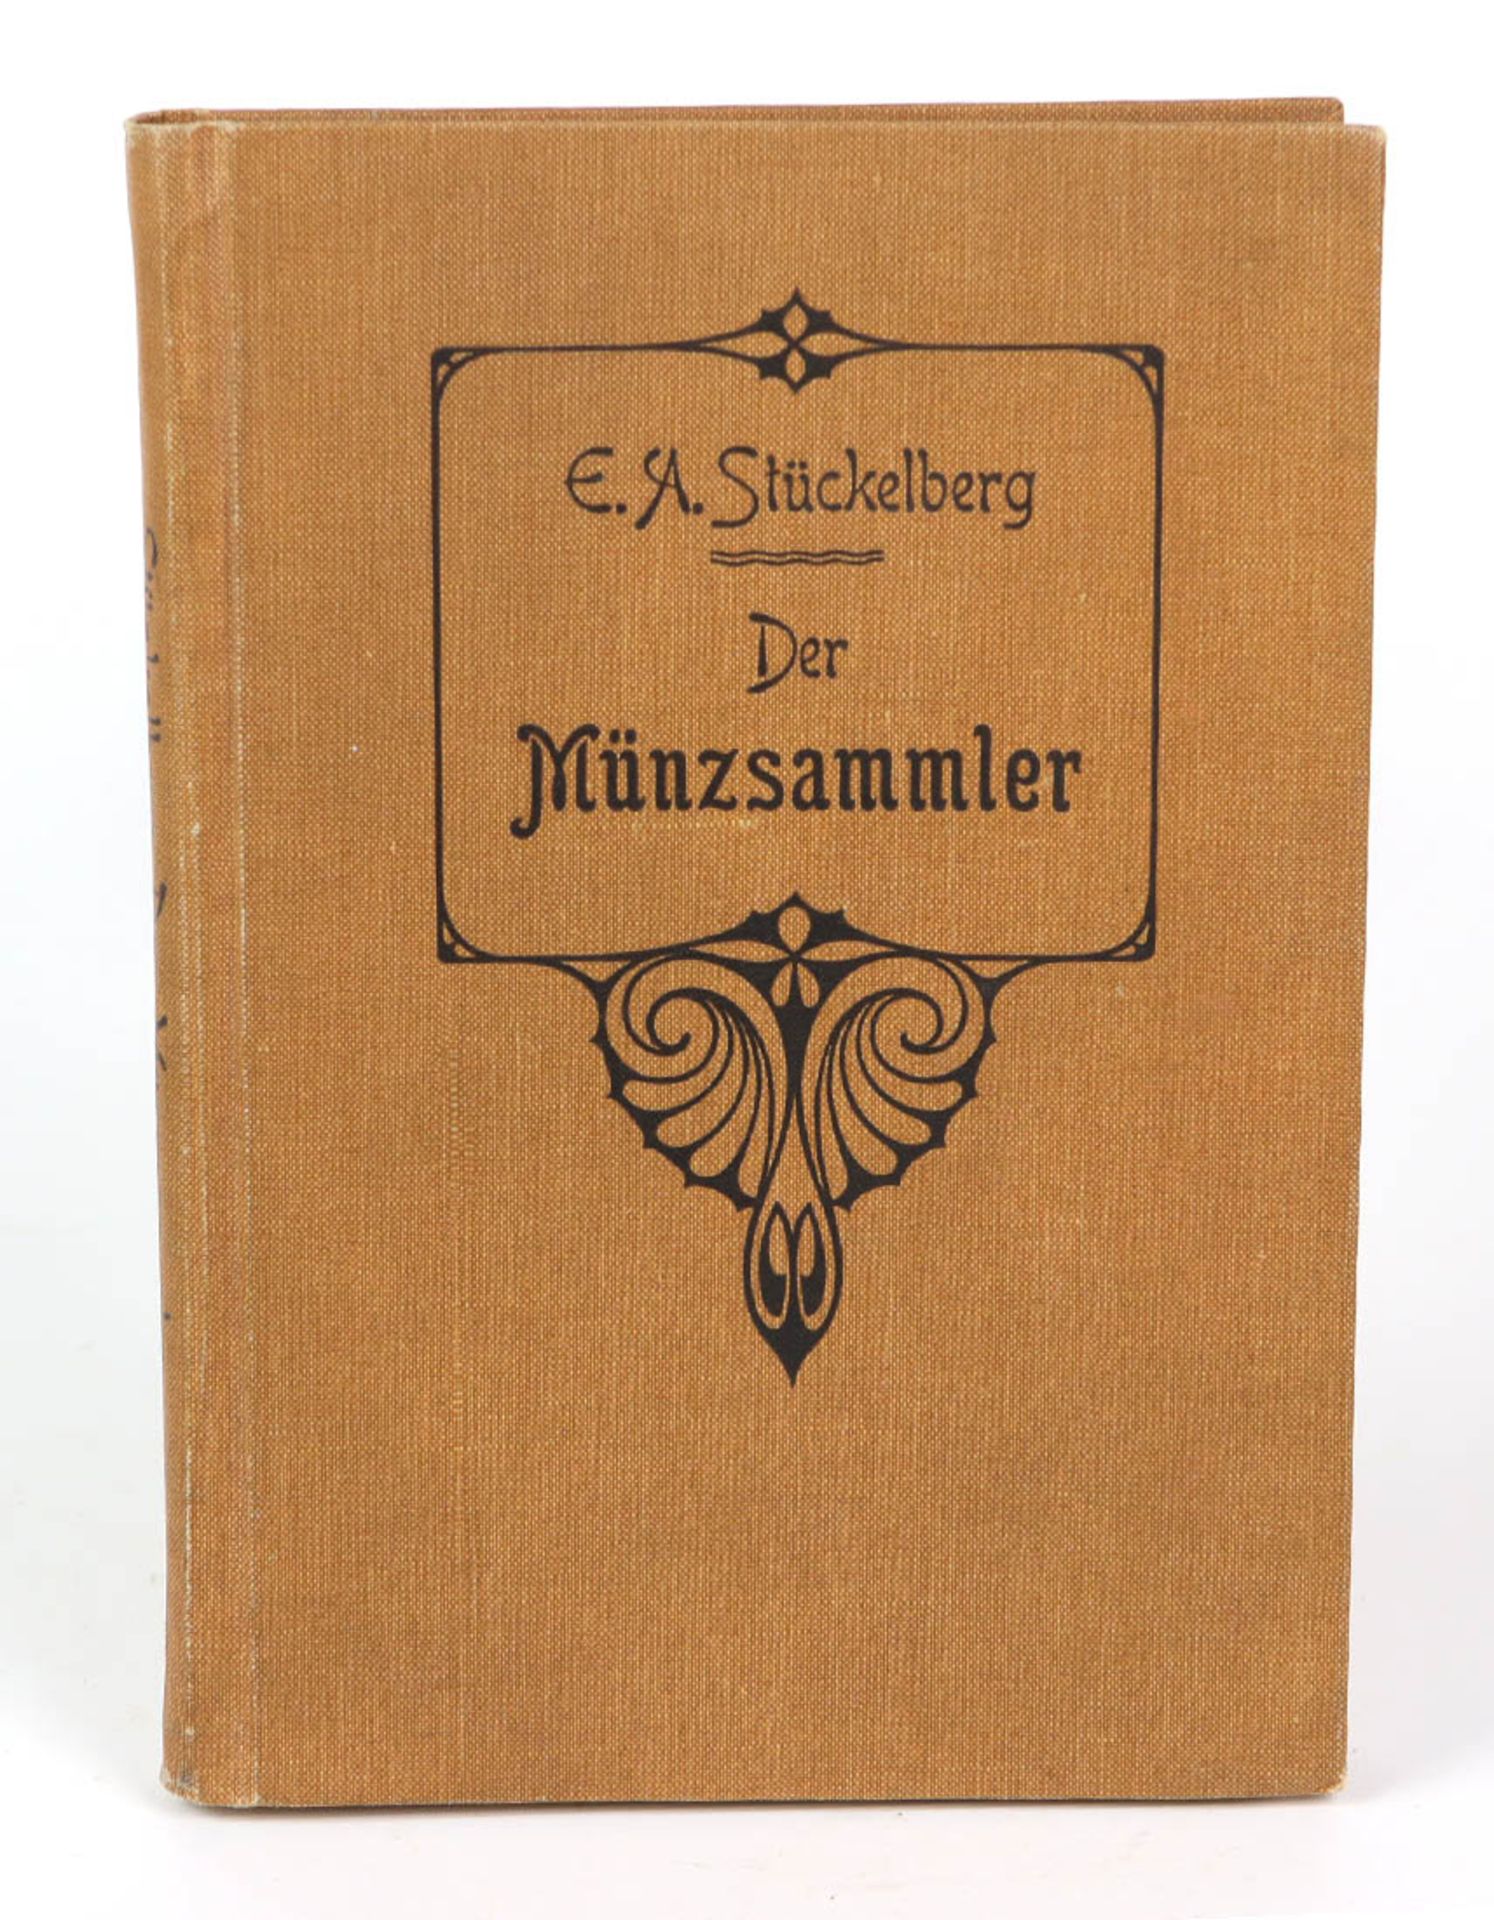 Der MünzsammlerEin Handbuch für Kenner und Anfäner, von E.A. Stückelberg, Verlag Art. Institut Orell